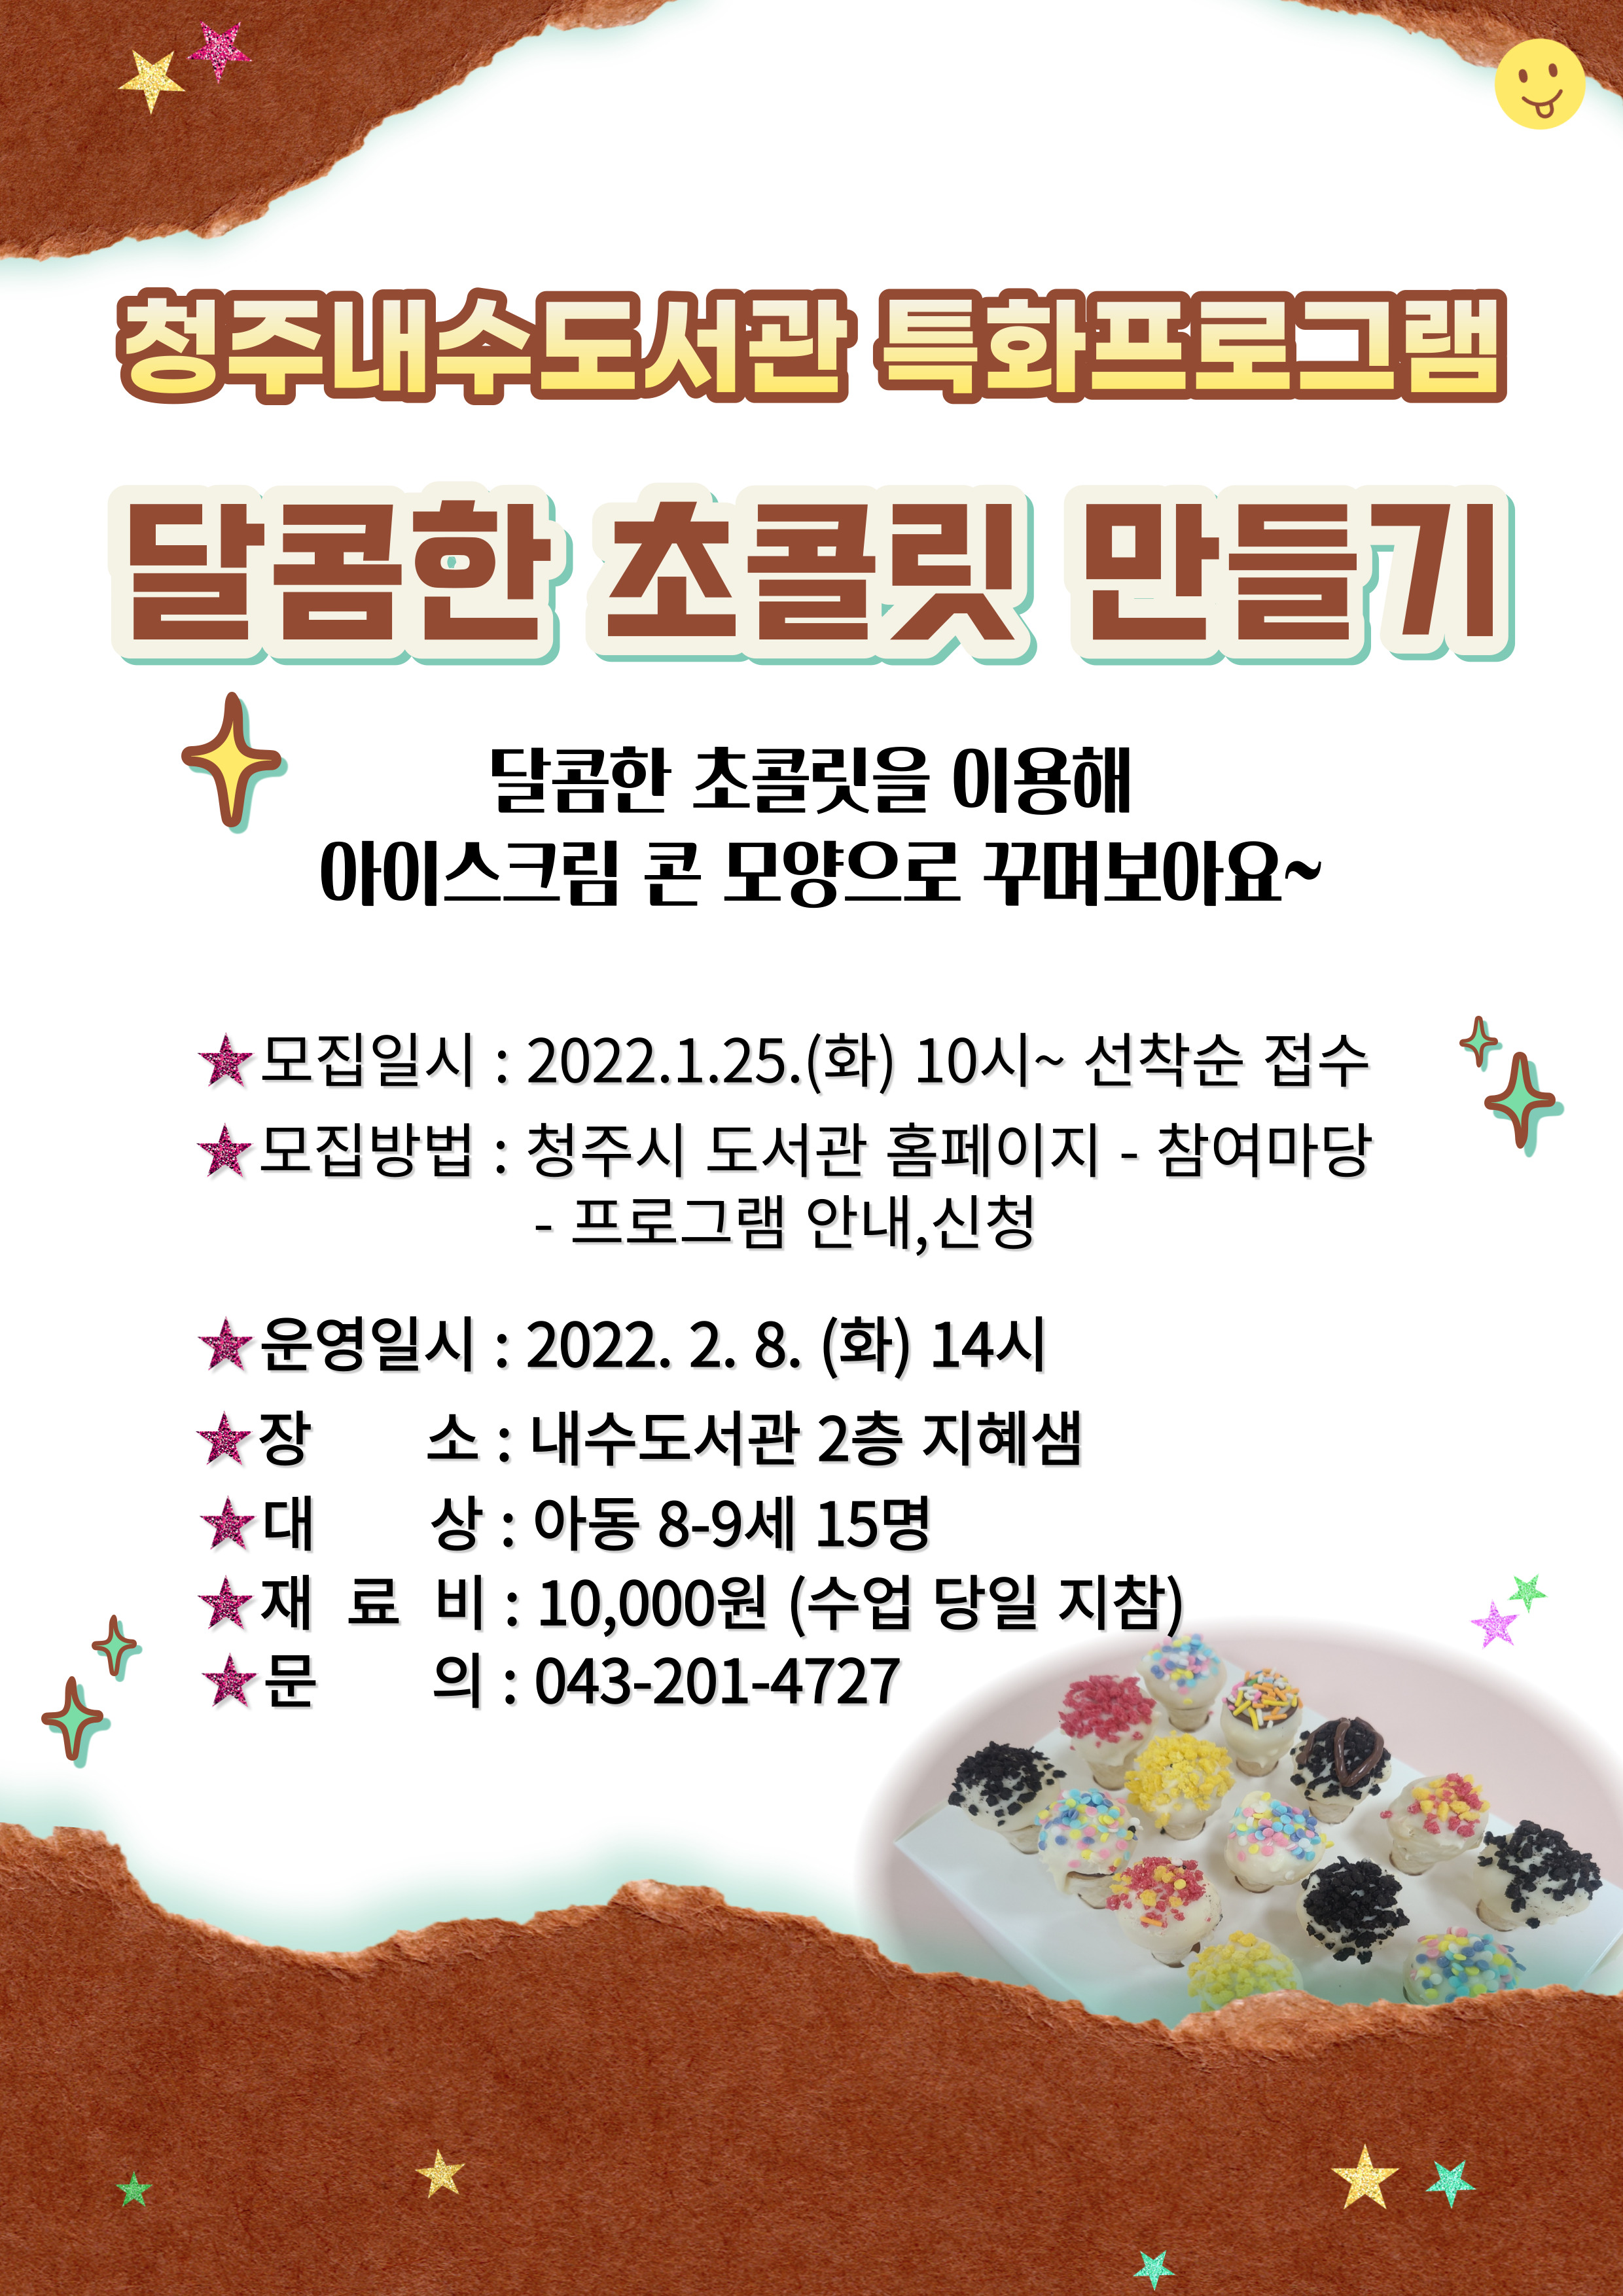 [내수도서관] (발렌타인데이 기념) 달콤한 초콜릿 만들기 수강생 모집